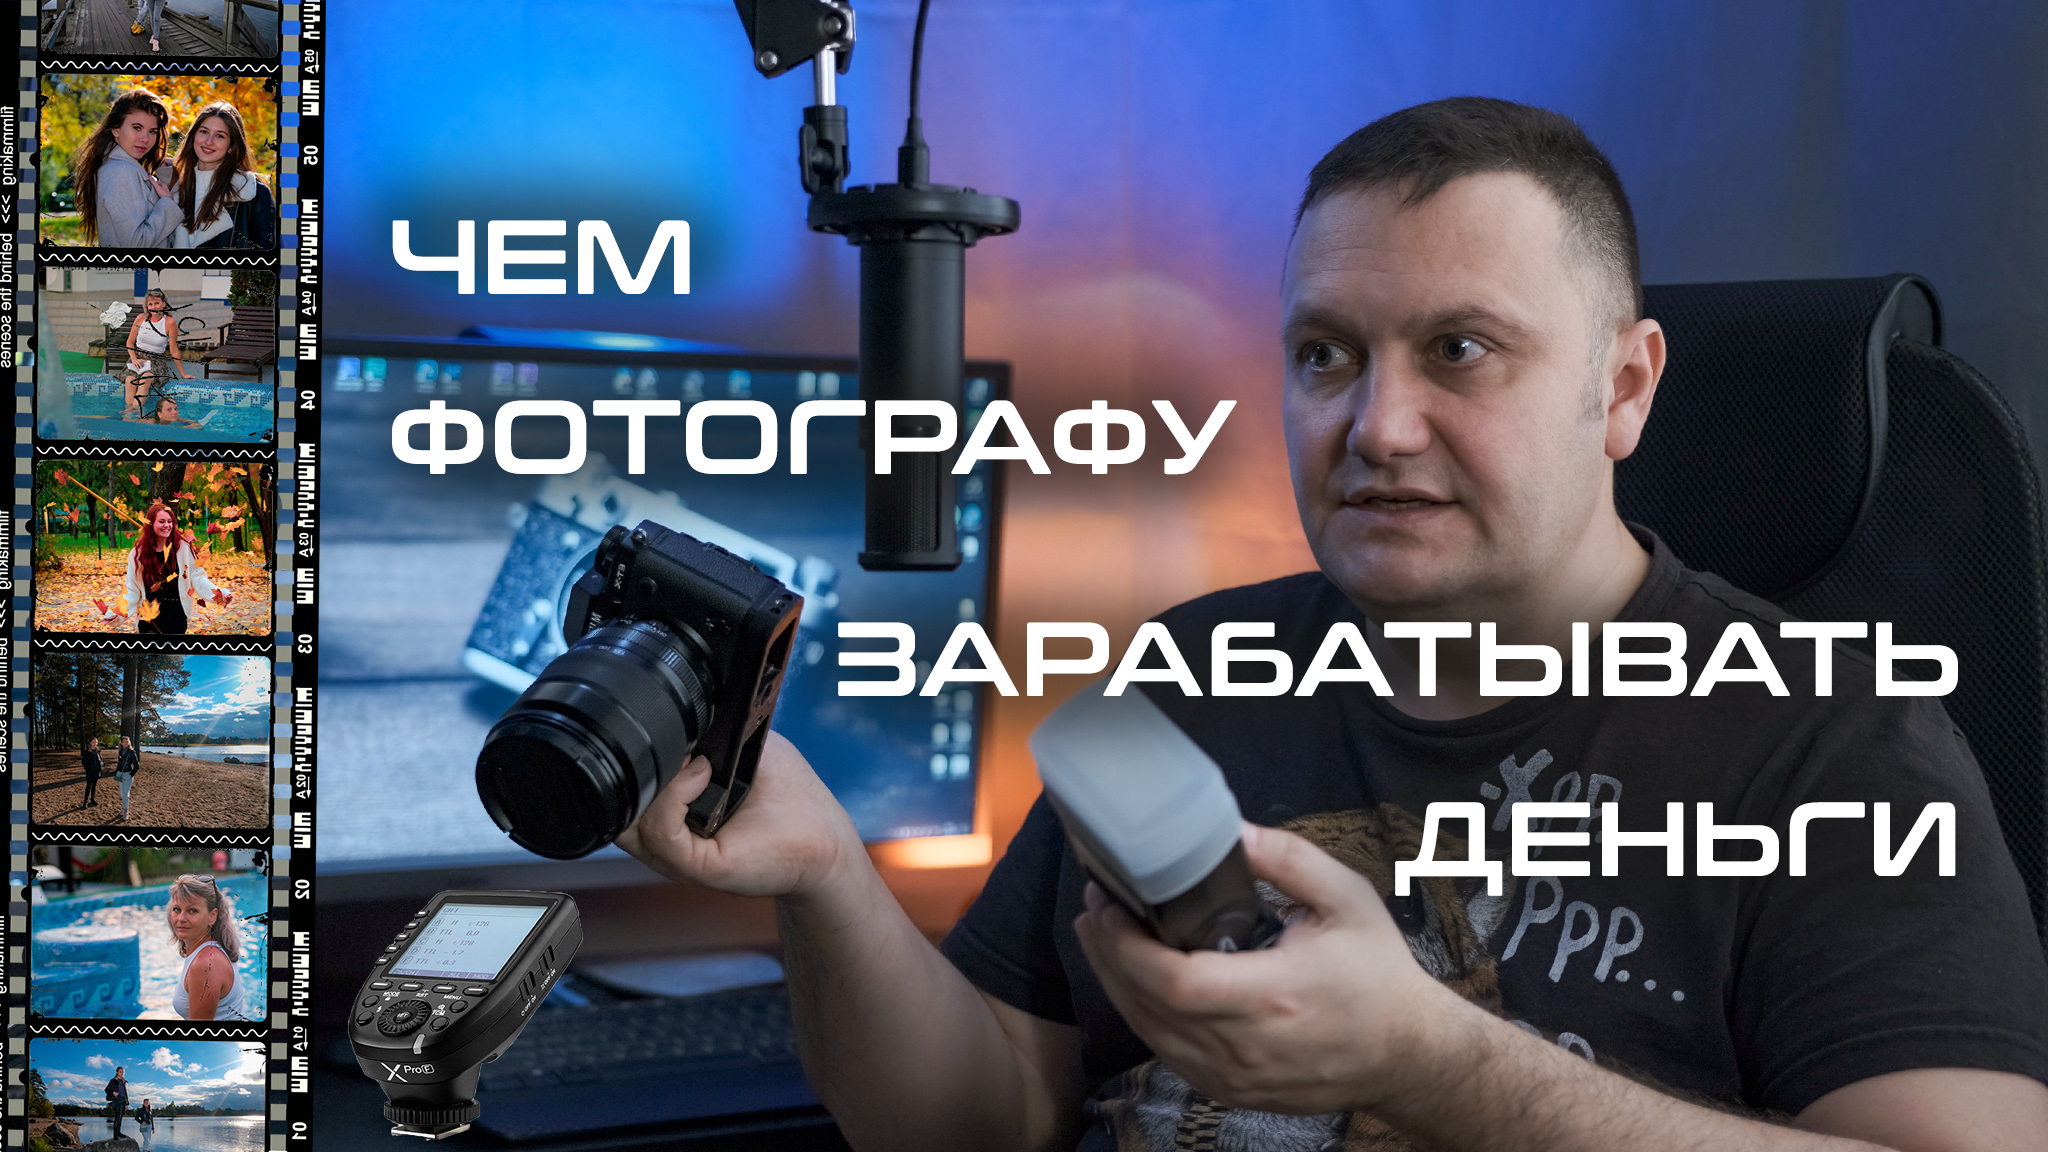 Сколько зарабатывает фотограф в россии. Камера для съемки. Как заработать фотографу. Сколько можно заработать фотографу.